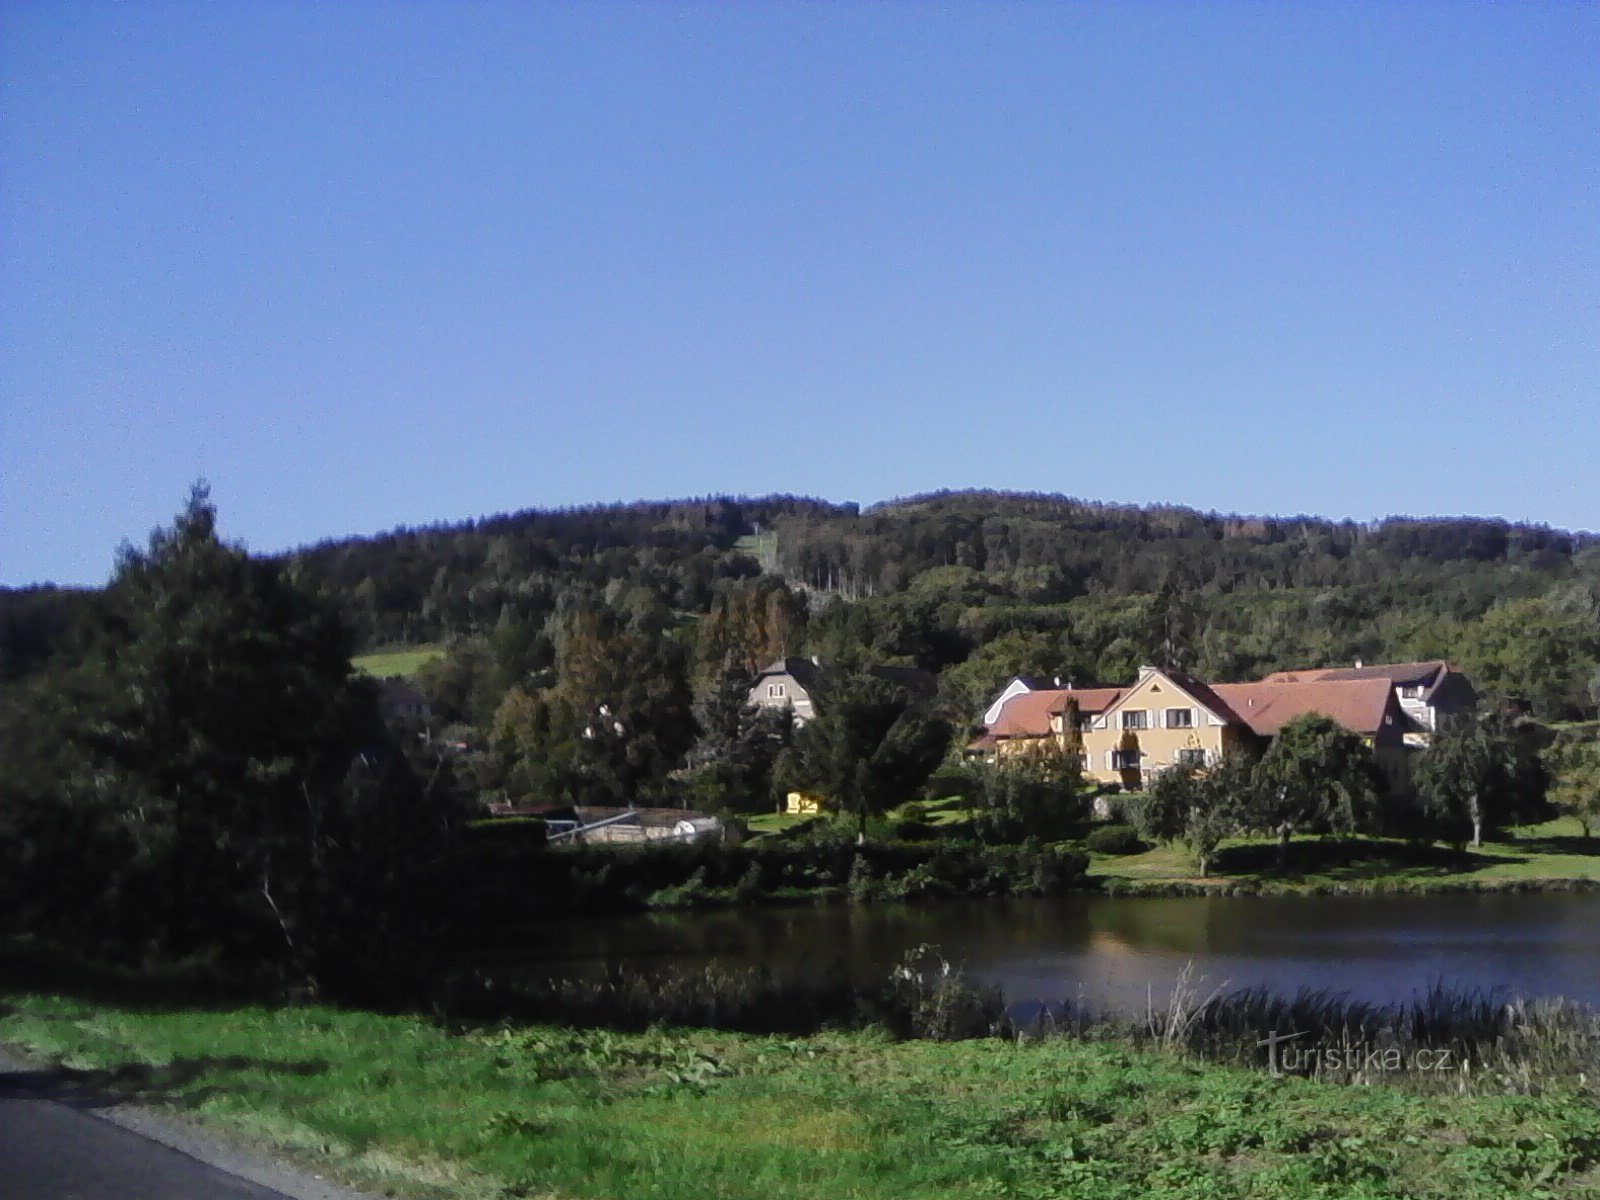 2. Vue sur Lihovarský rybník à Jetřichovice jusqu'à Monínec.